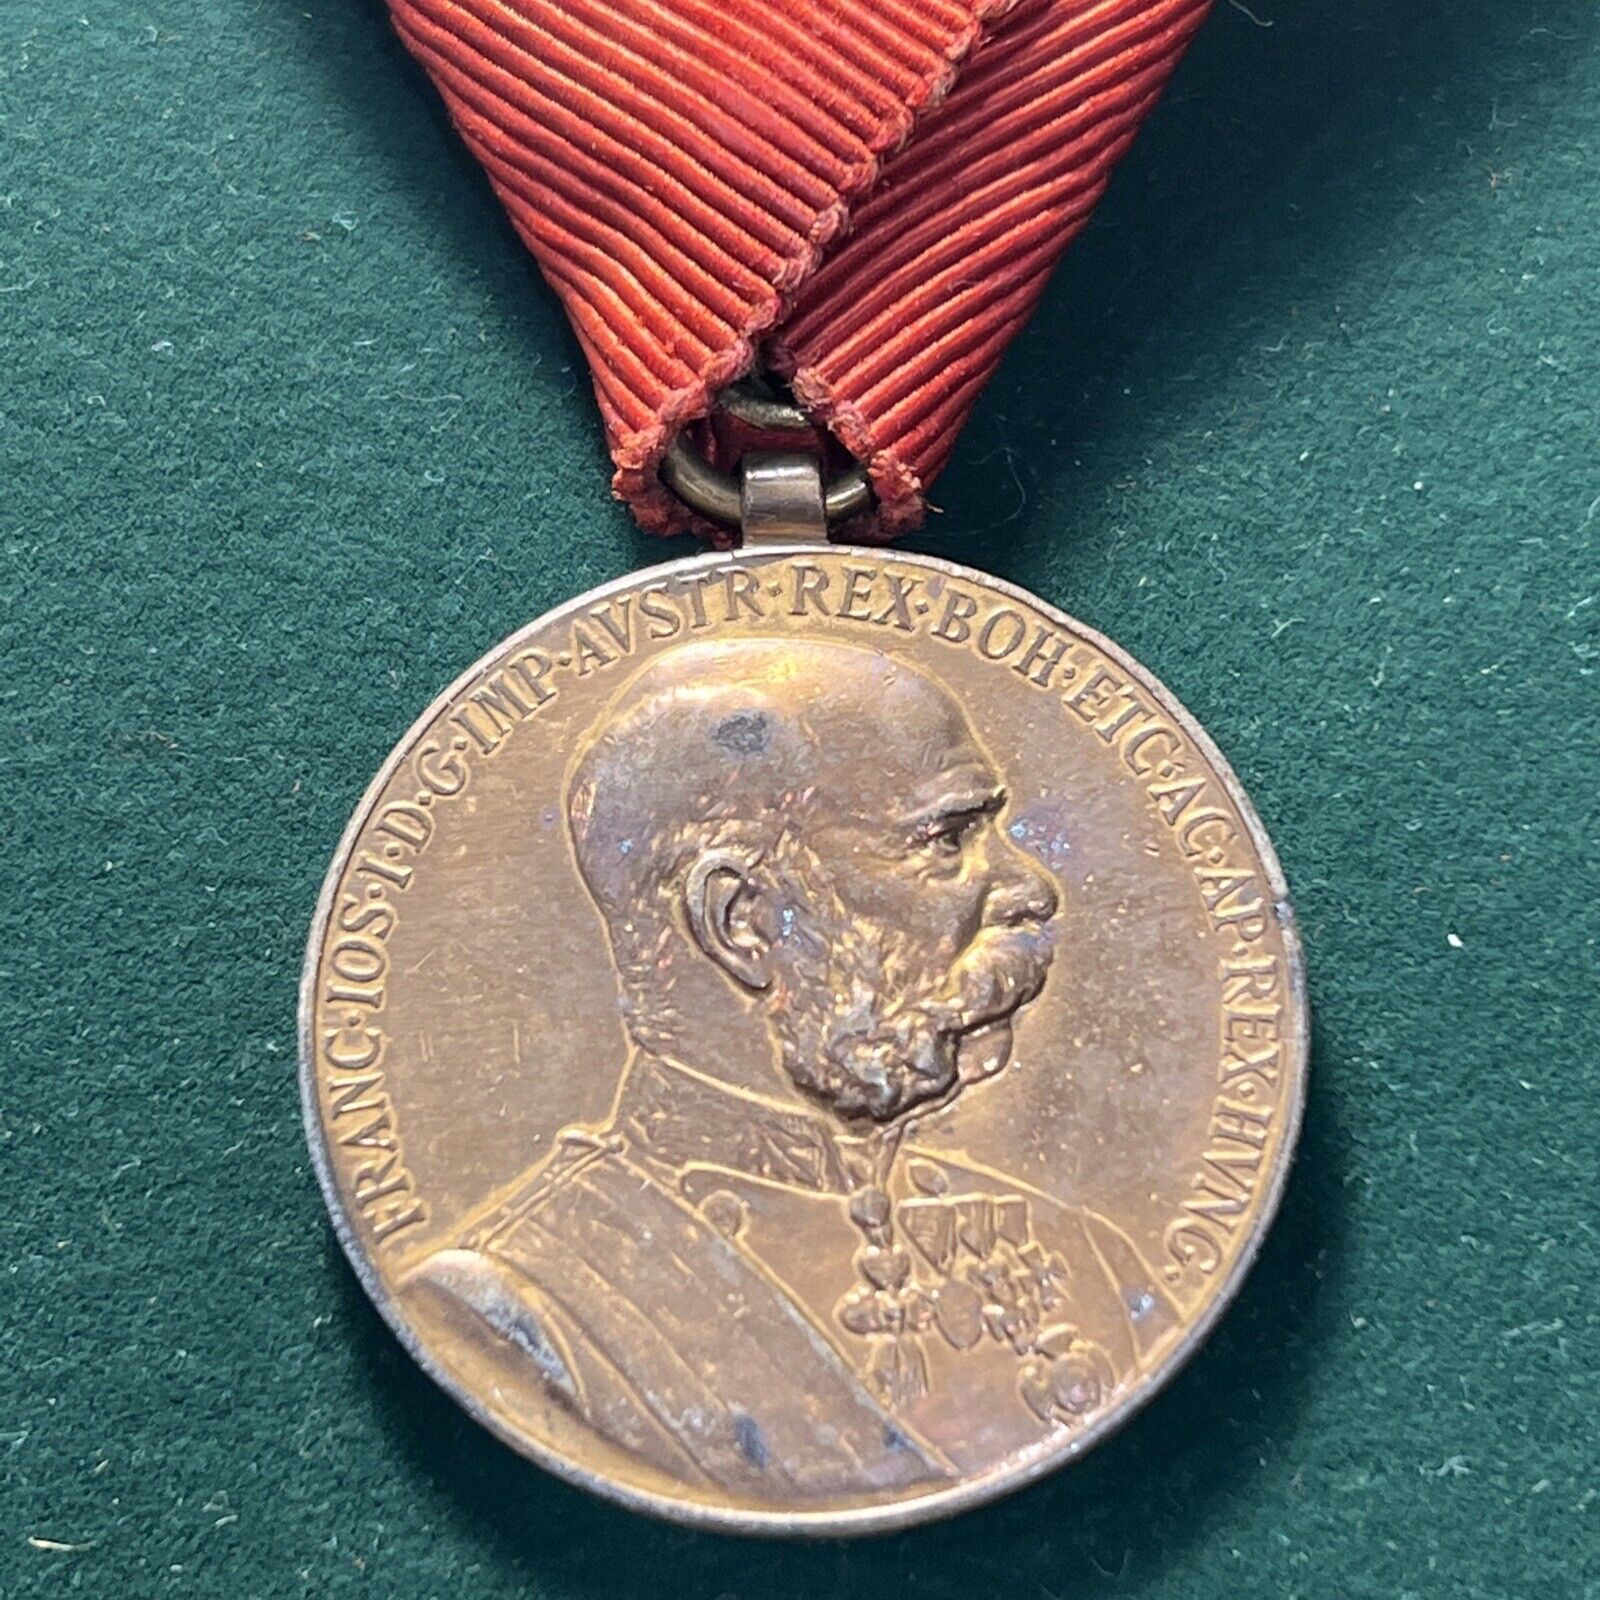 Austro-Hungarian Empire￼ Commemorative Medal 1898 “ SIGNVM MEMORIAE”